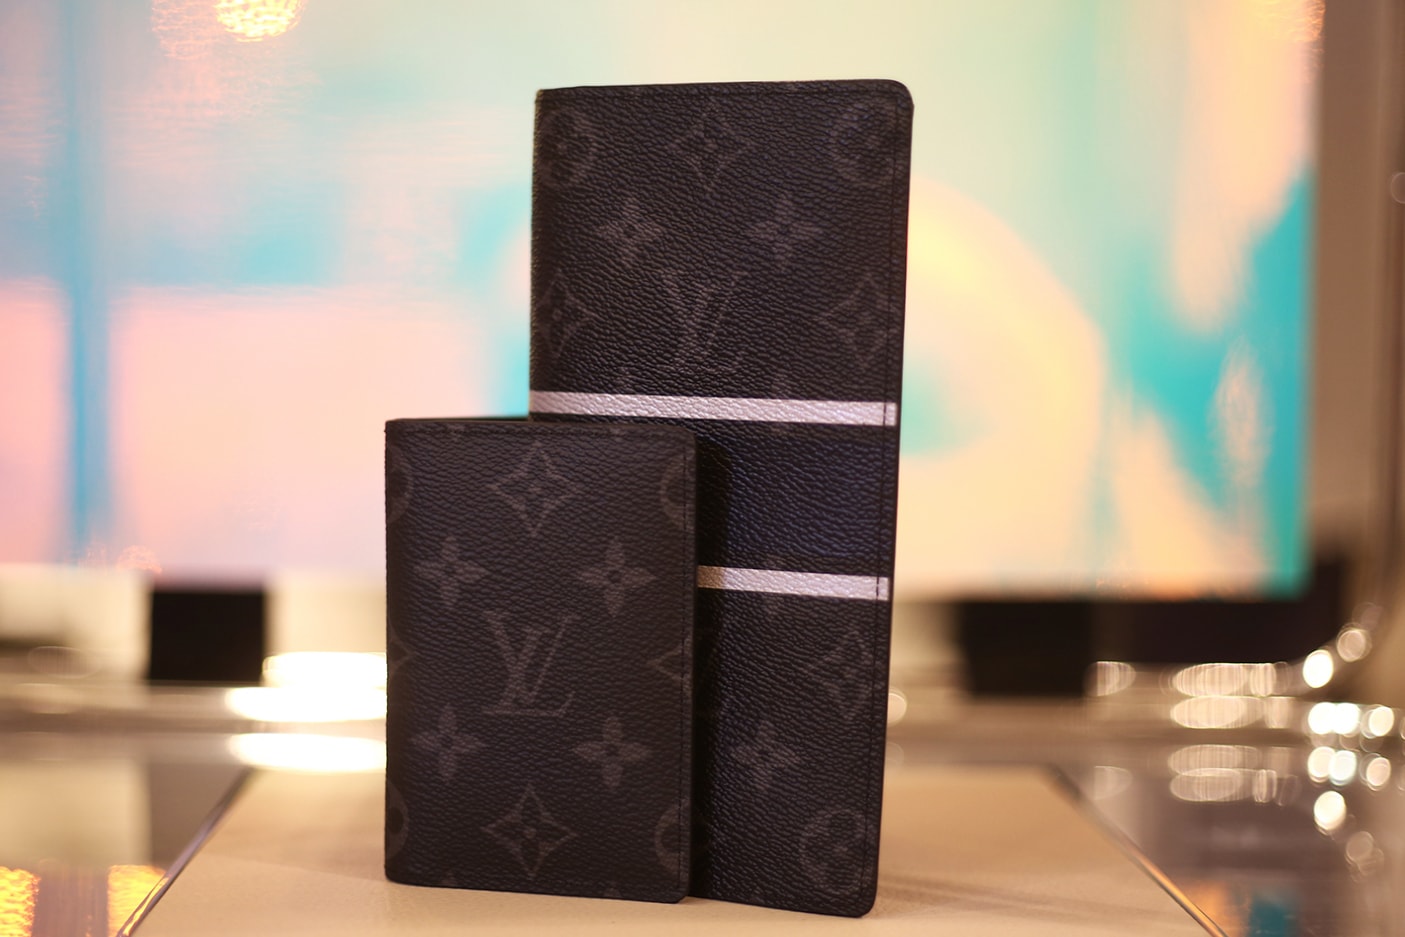 Louis Vuitton fragment design Harrods London Pop-Up